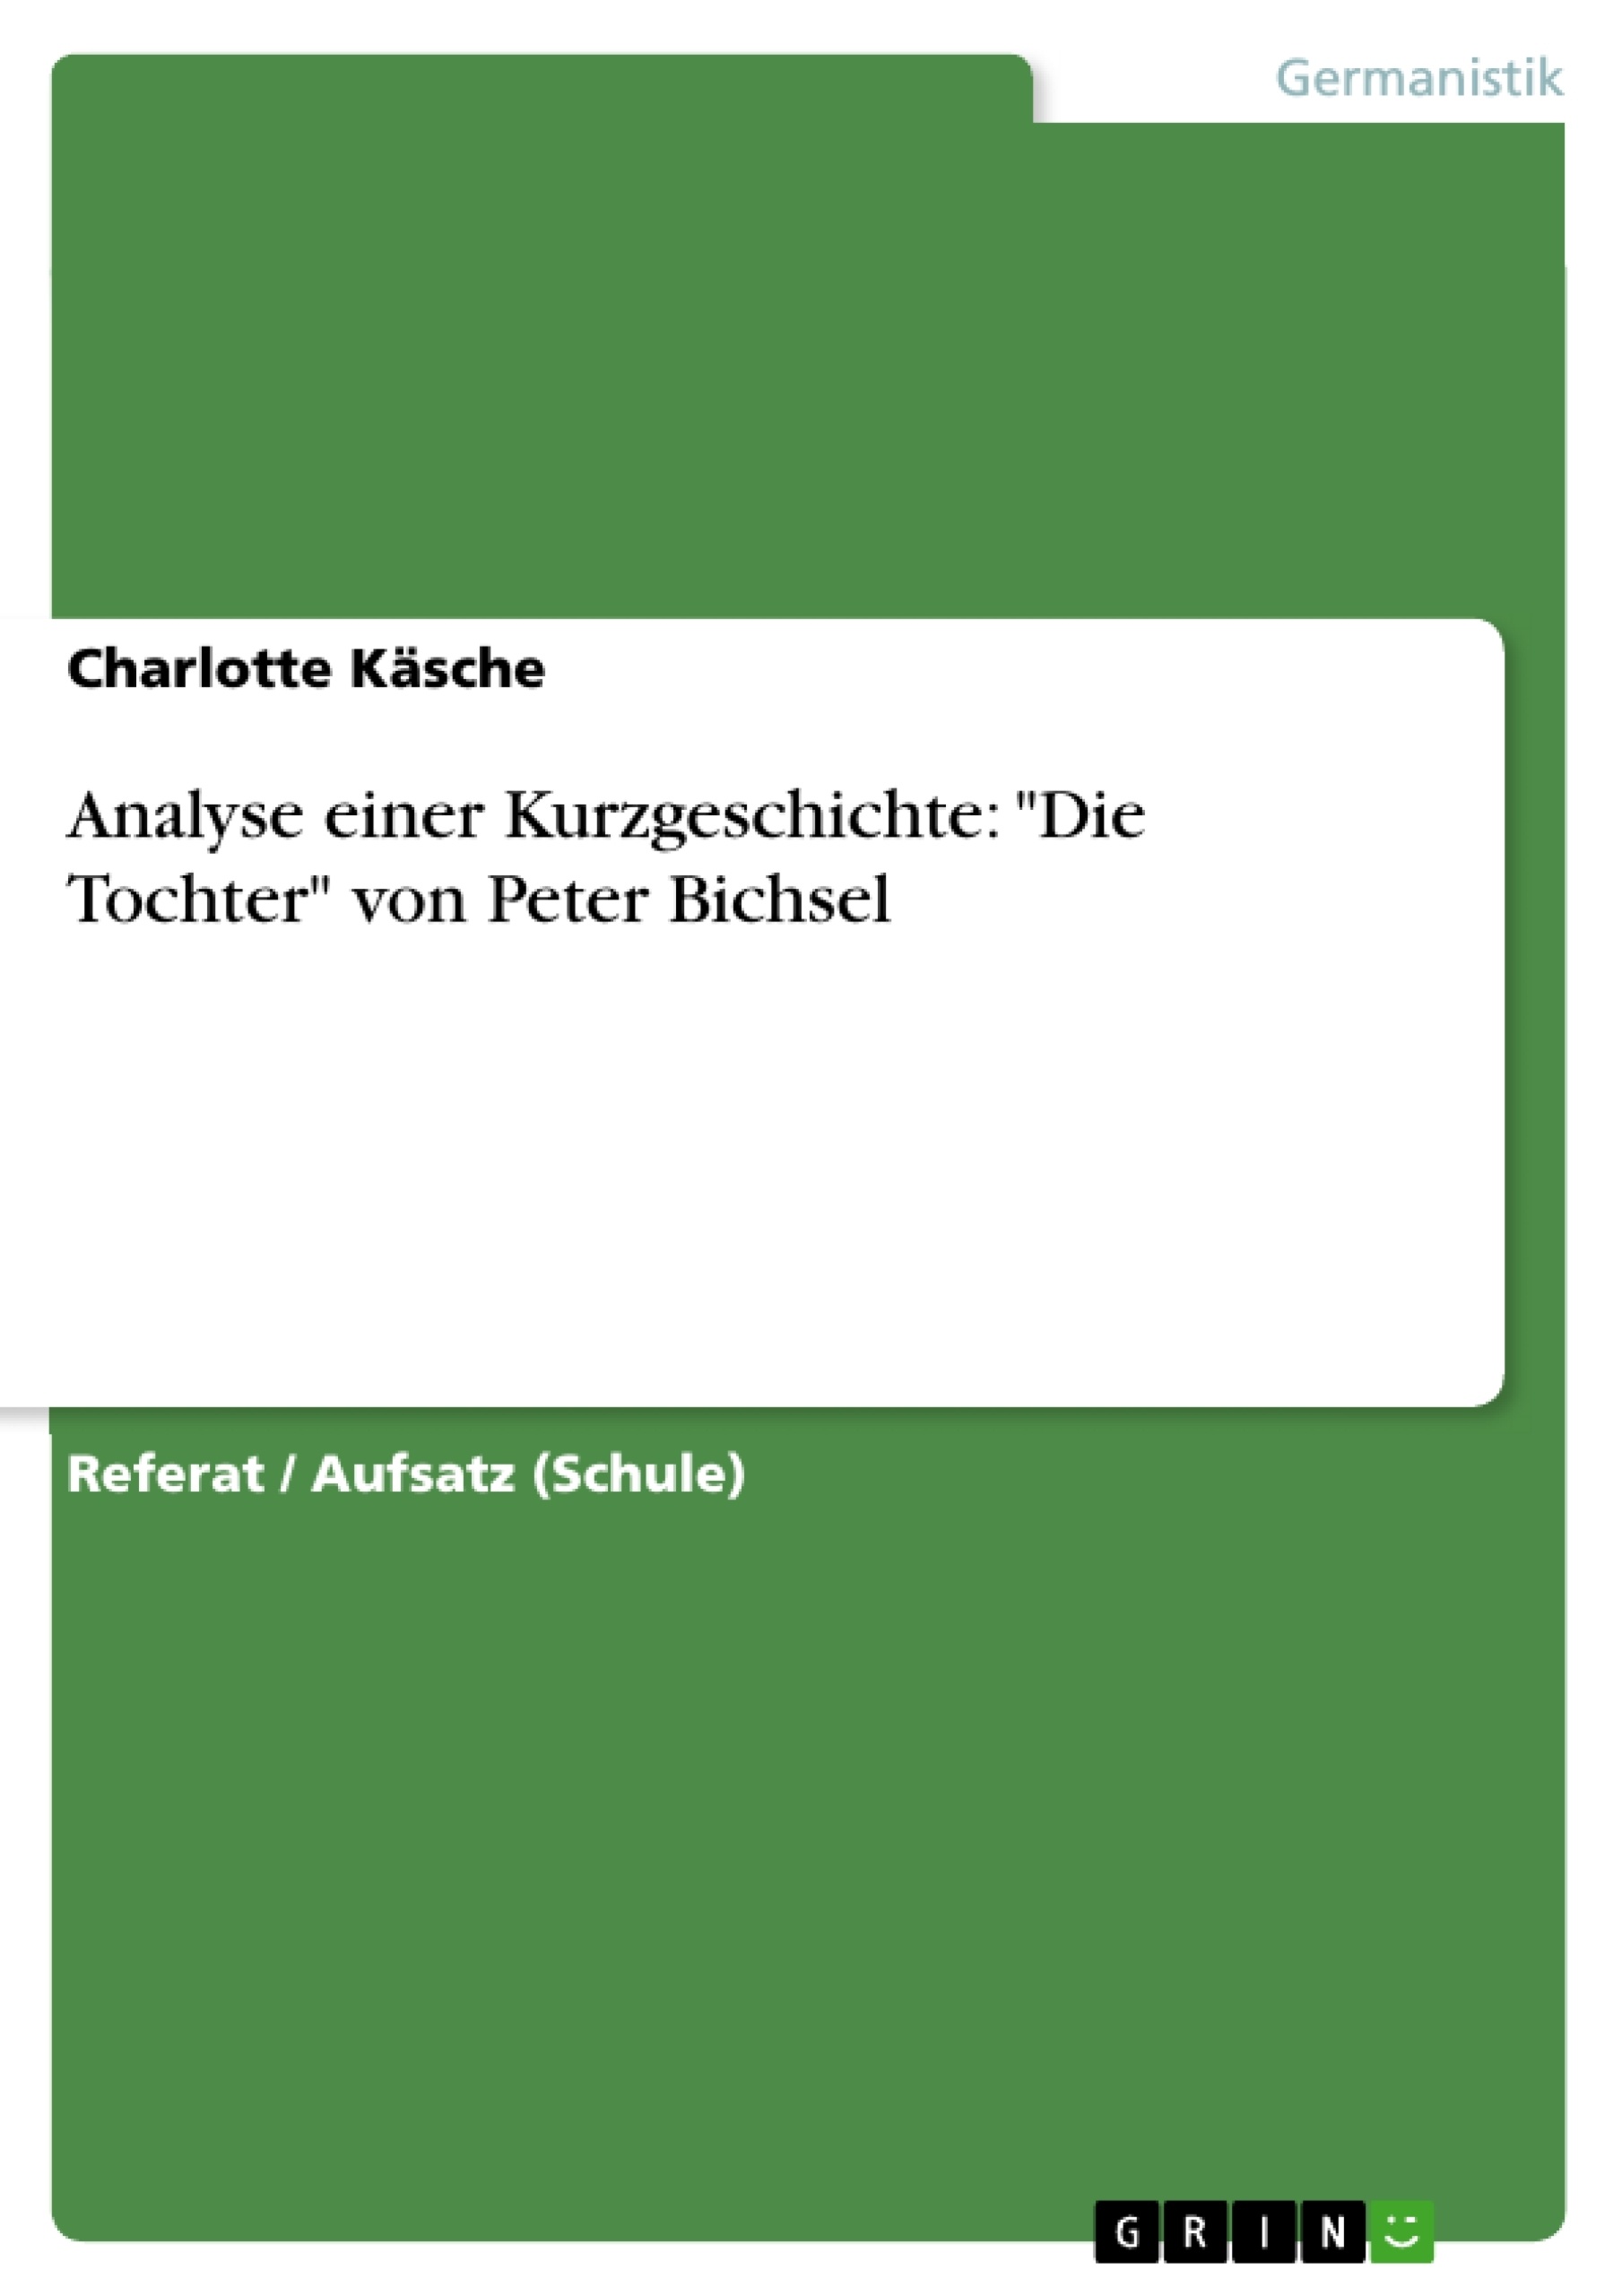 Titre: Analyse einer Kurzgeschichte: "Die Tochter" von Peter Bichsel